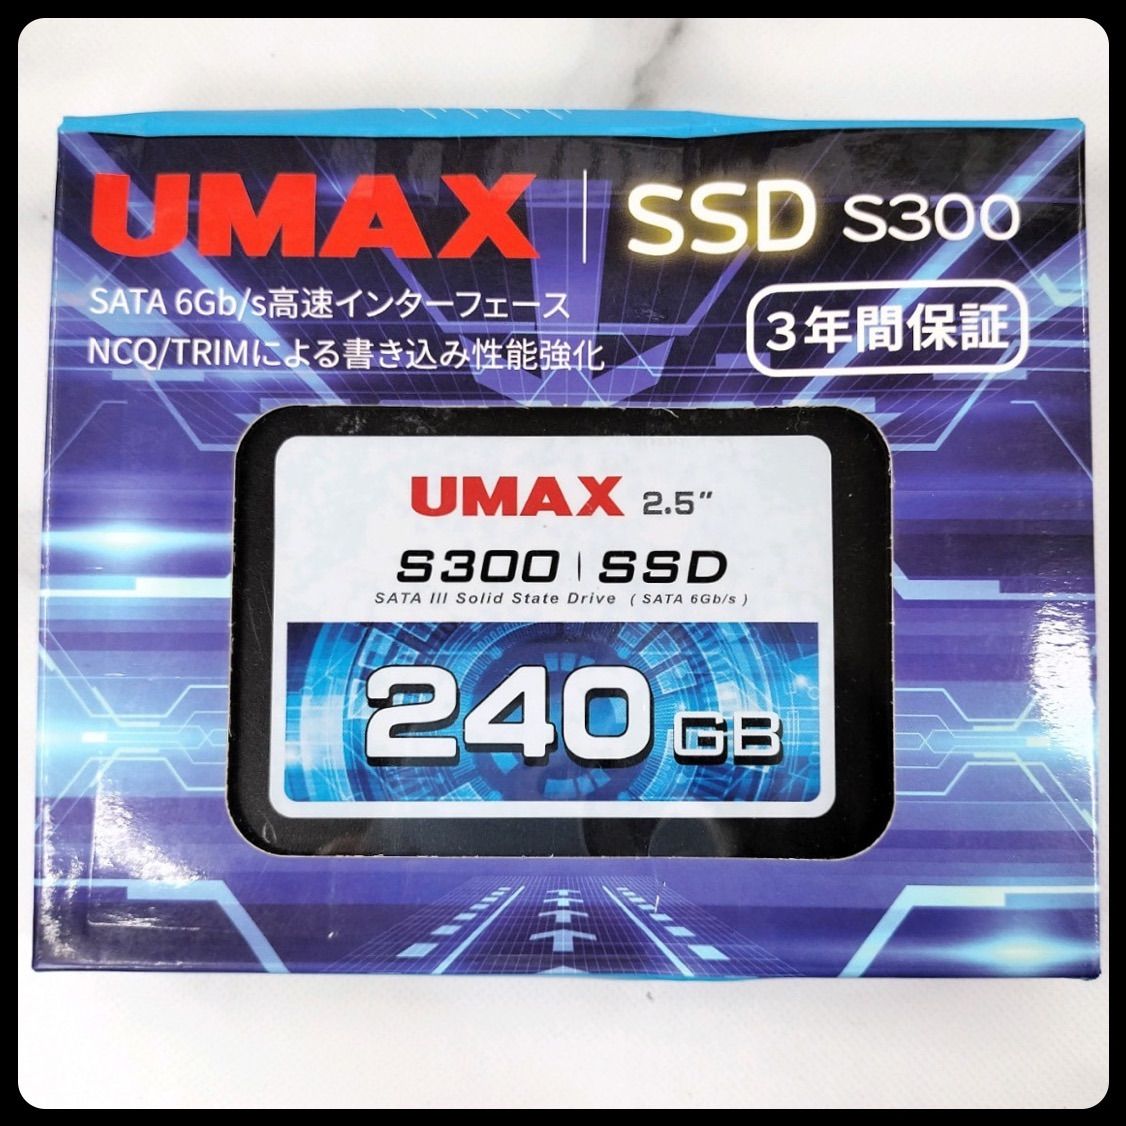 訳あり特価！ UMAX SSD S300 240GB SATA 6Gb/s 高速インターフェース NCQ/TRIM 静音 高速 耐性 低消費電力  S300TL240K 5V (230306227)